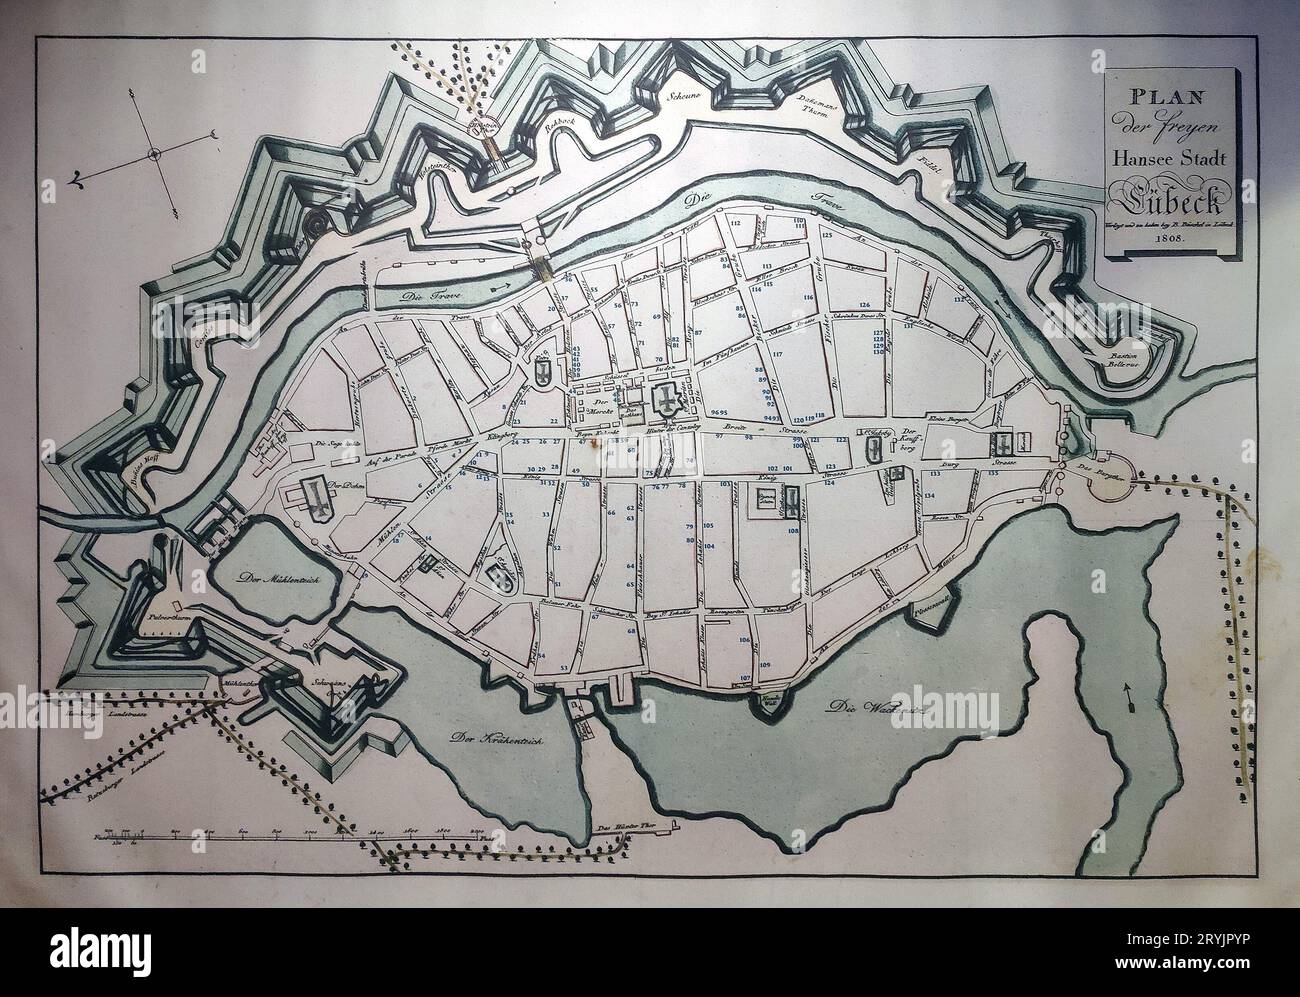 Plan historique de la ville hanséatique libre de Luebeck de 1808, site du patrimoine mondial de l'UNESCO, Allemagne Banque D'Images